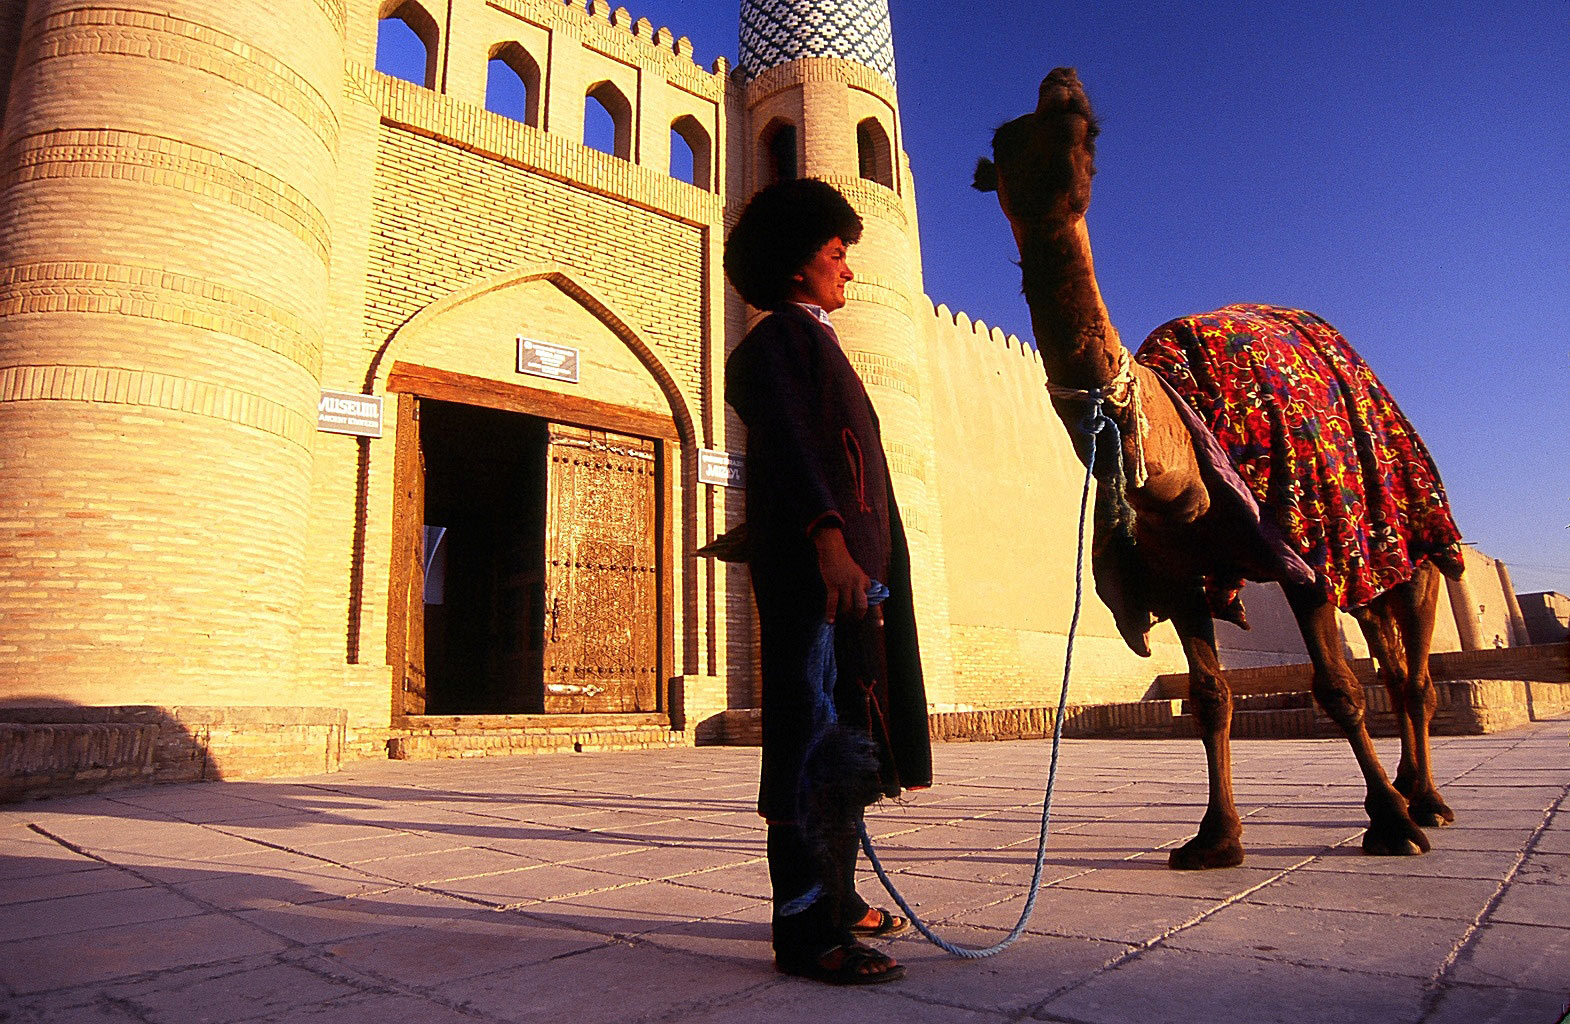 Camel at the gate - Khiva, Uzbekistan